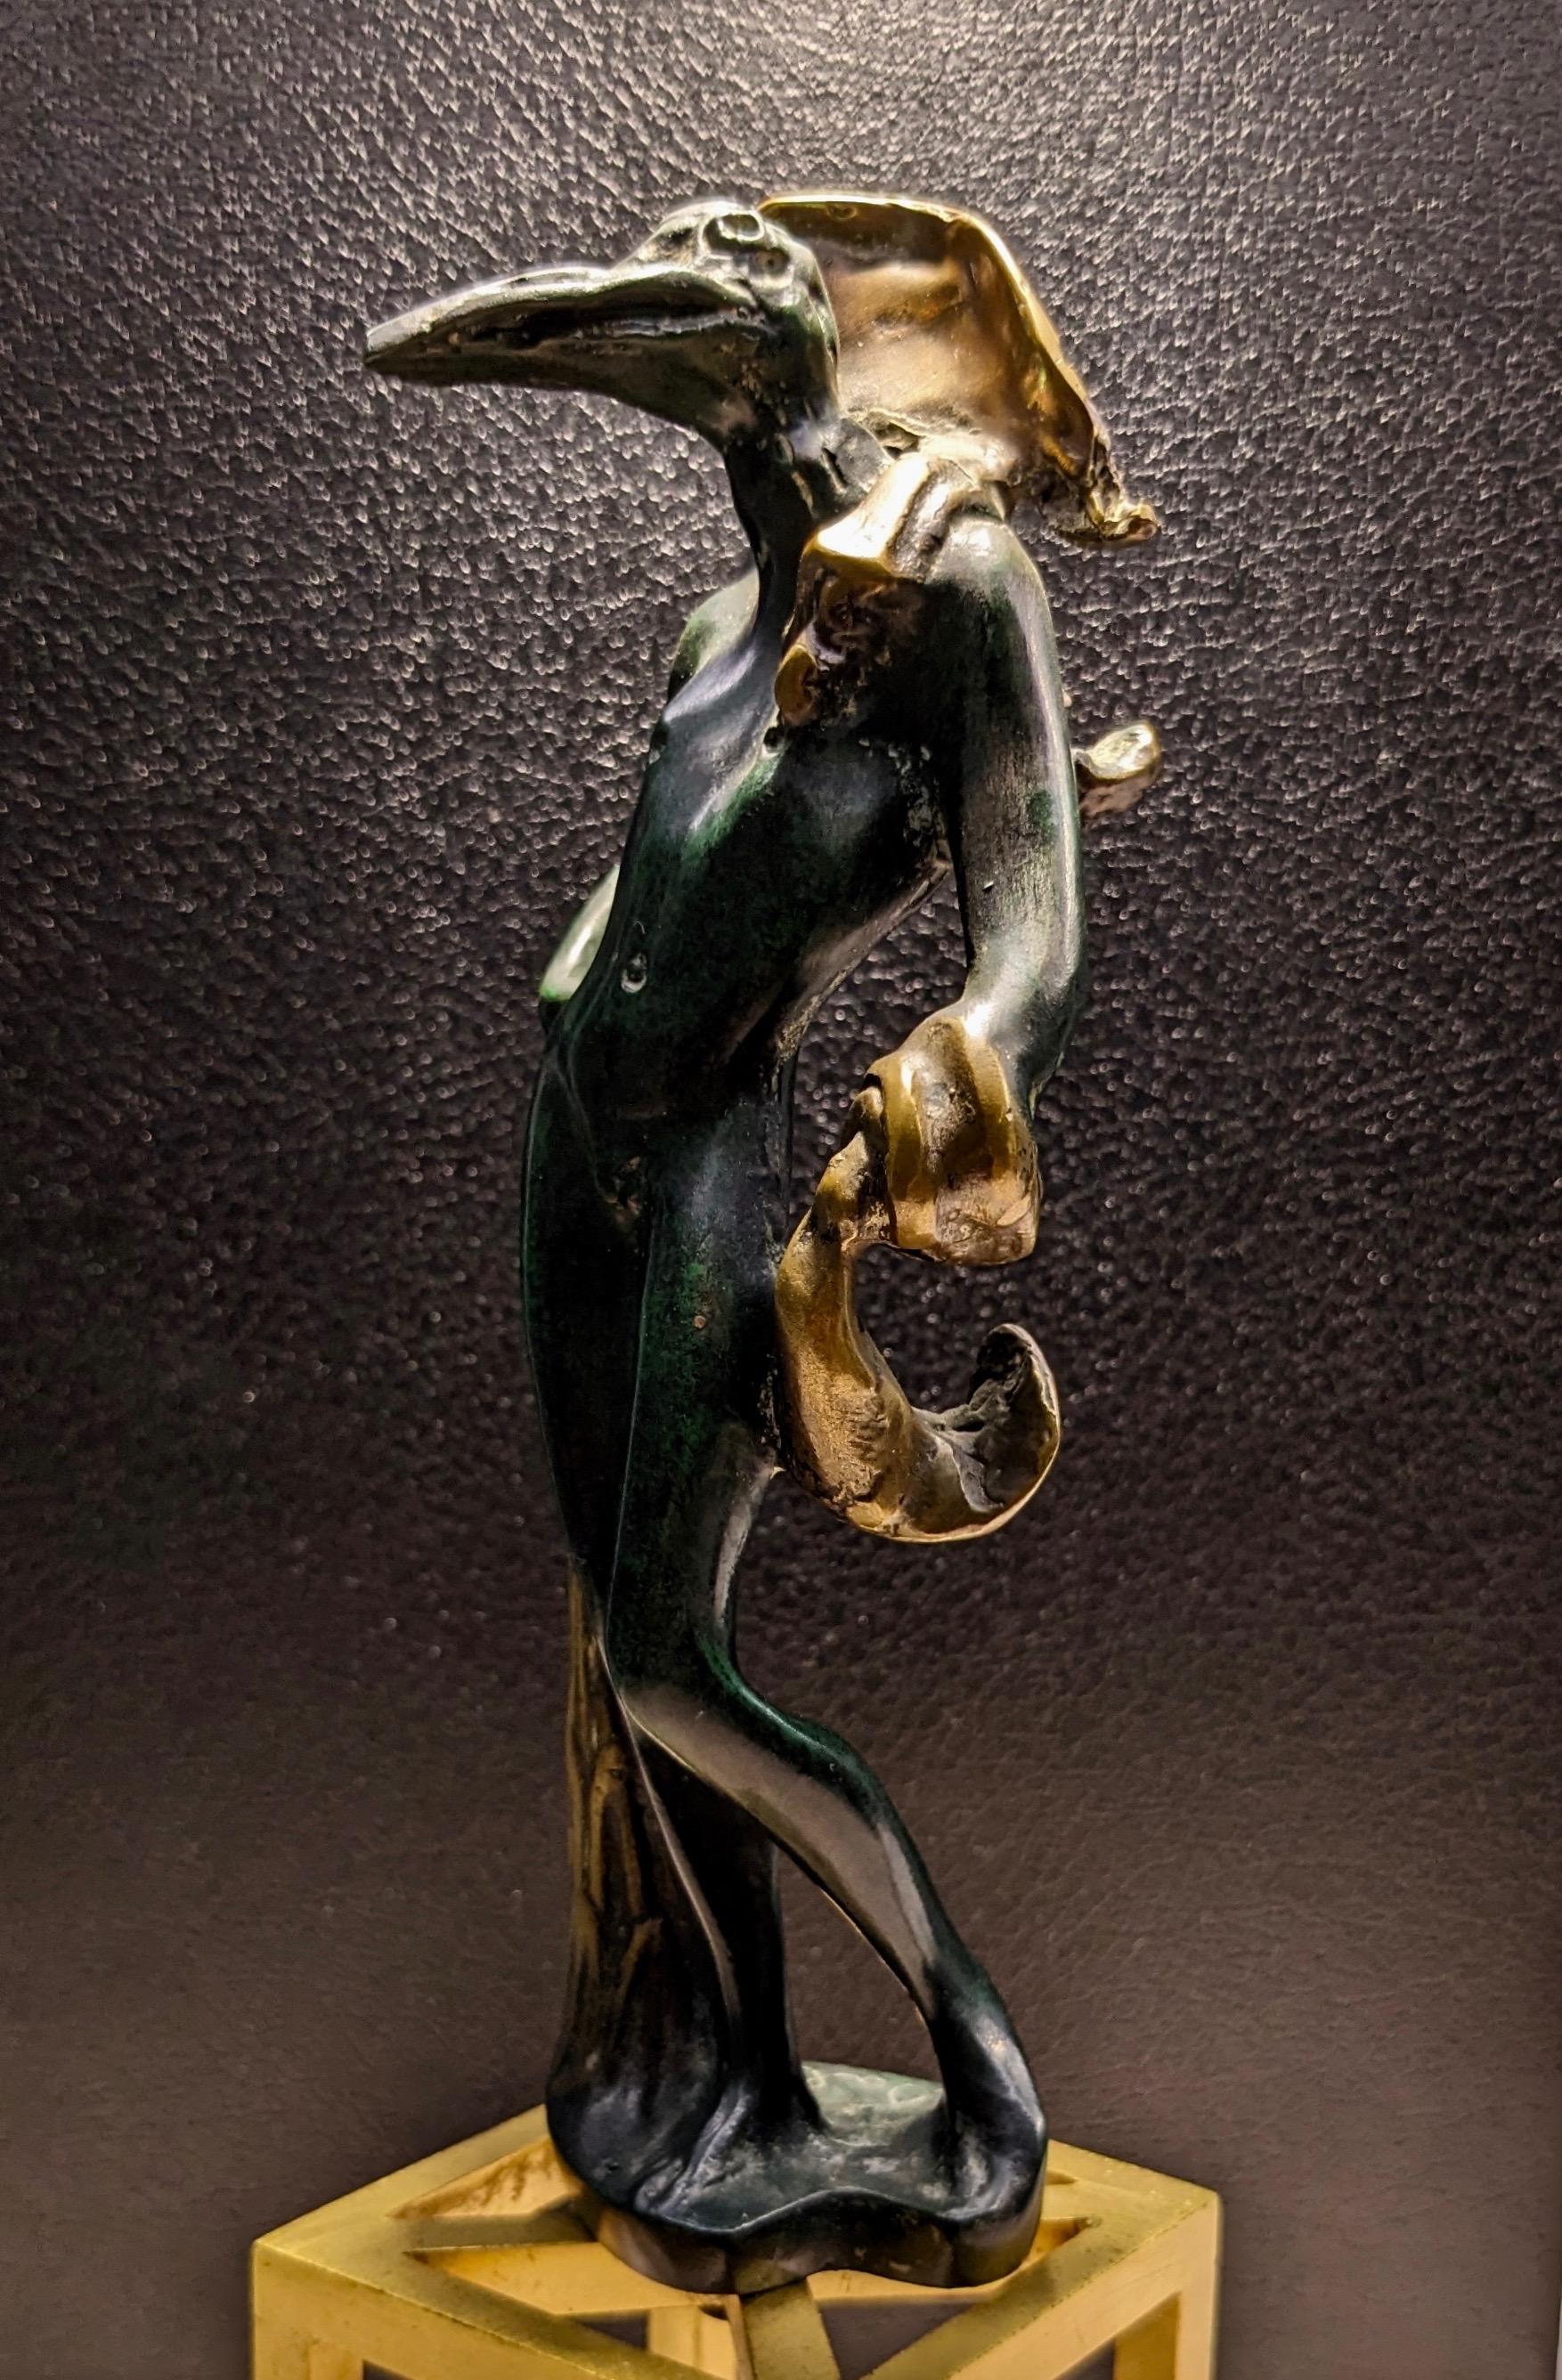 Statua in bronzo lavorazione a cera persa Birdman, L'homme oiseau  firmata Salvador Dalì, edizione limitata numero 265/350.
Altezza con base 27cm, senza base 20cm
L'opera è fornita con certificato originale 